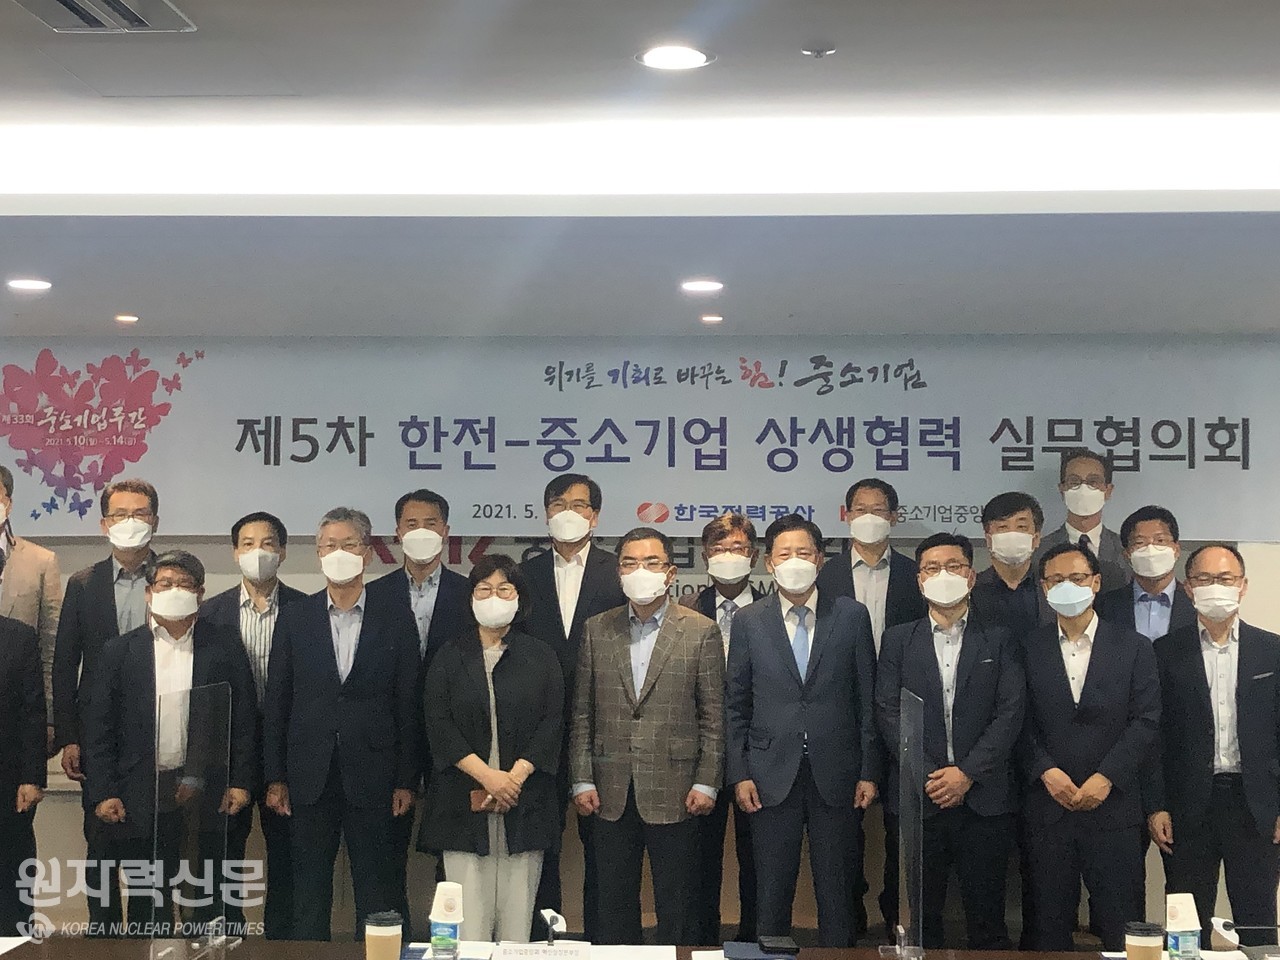 한국전력은 서울 여의도에 위치한 중소기업중앙회에서 중소기업중앙회, 전력기자재 중소기업 조합 대표자와의 ‘중소기업 동반성장 간담회’를 개최했다.